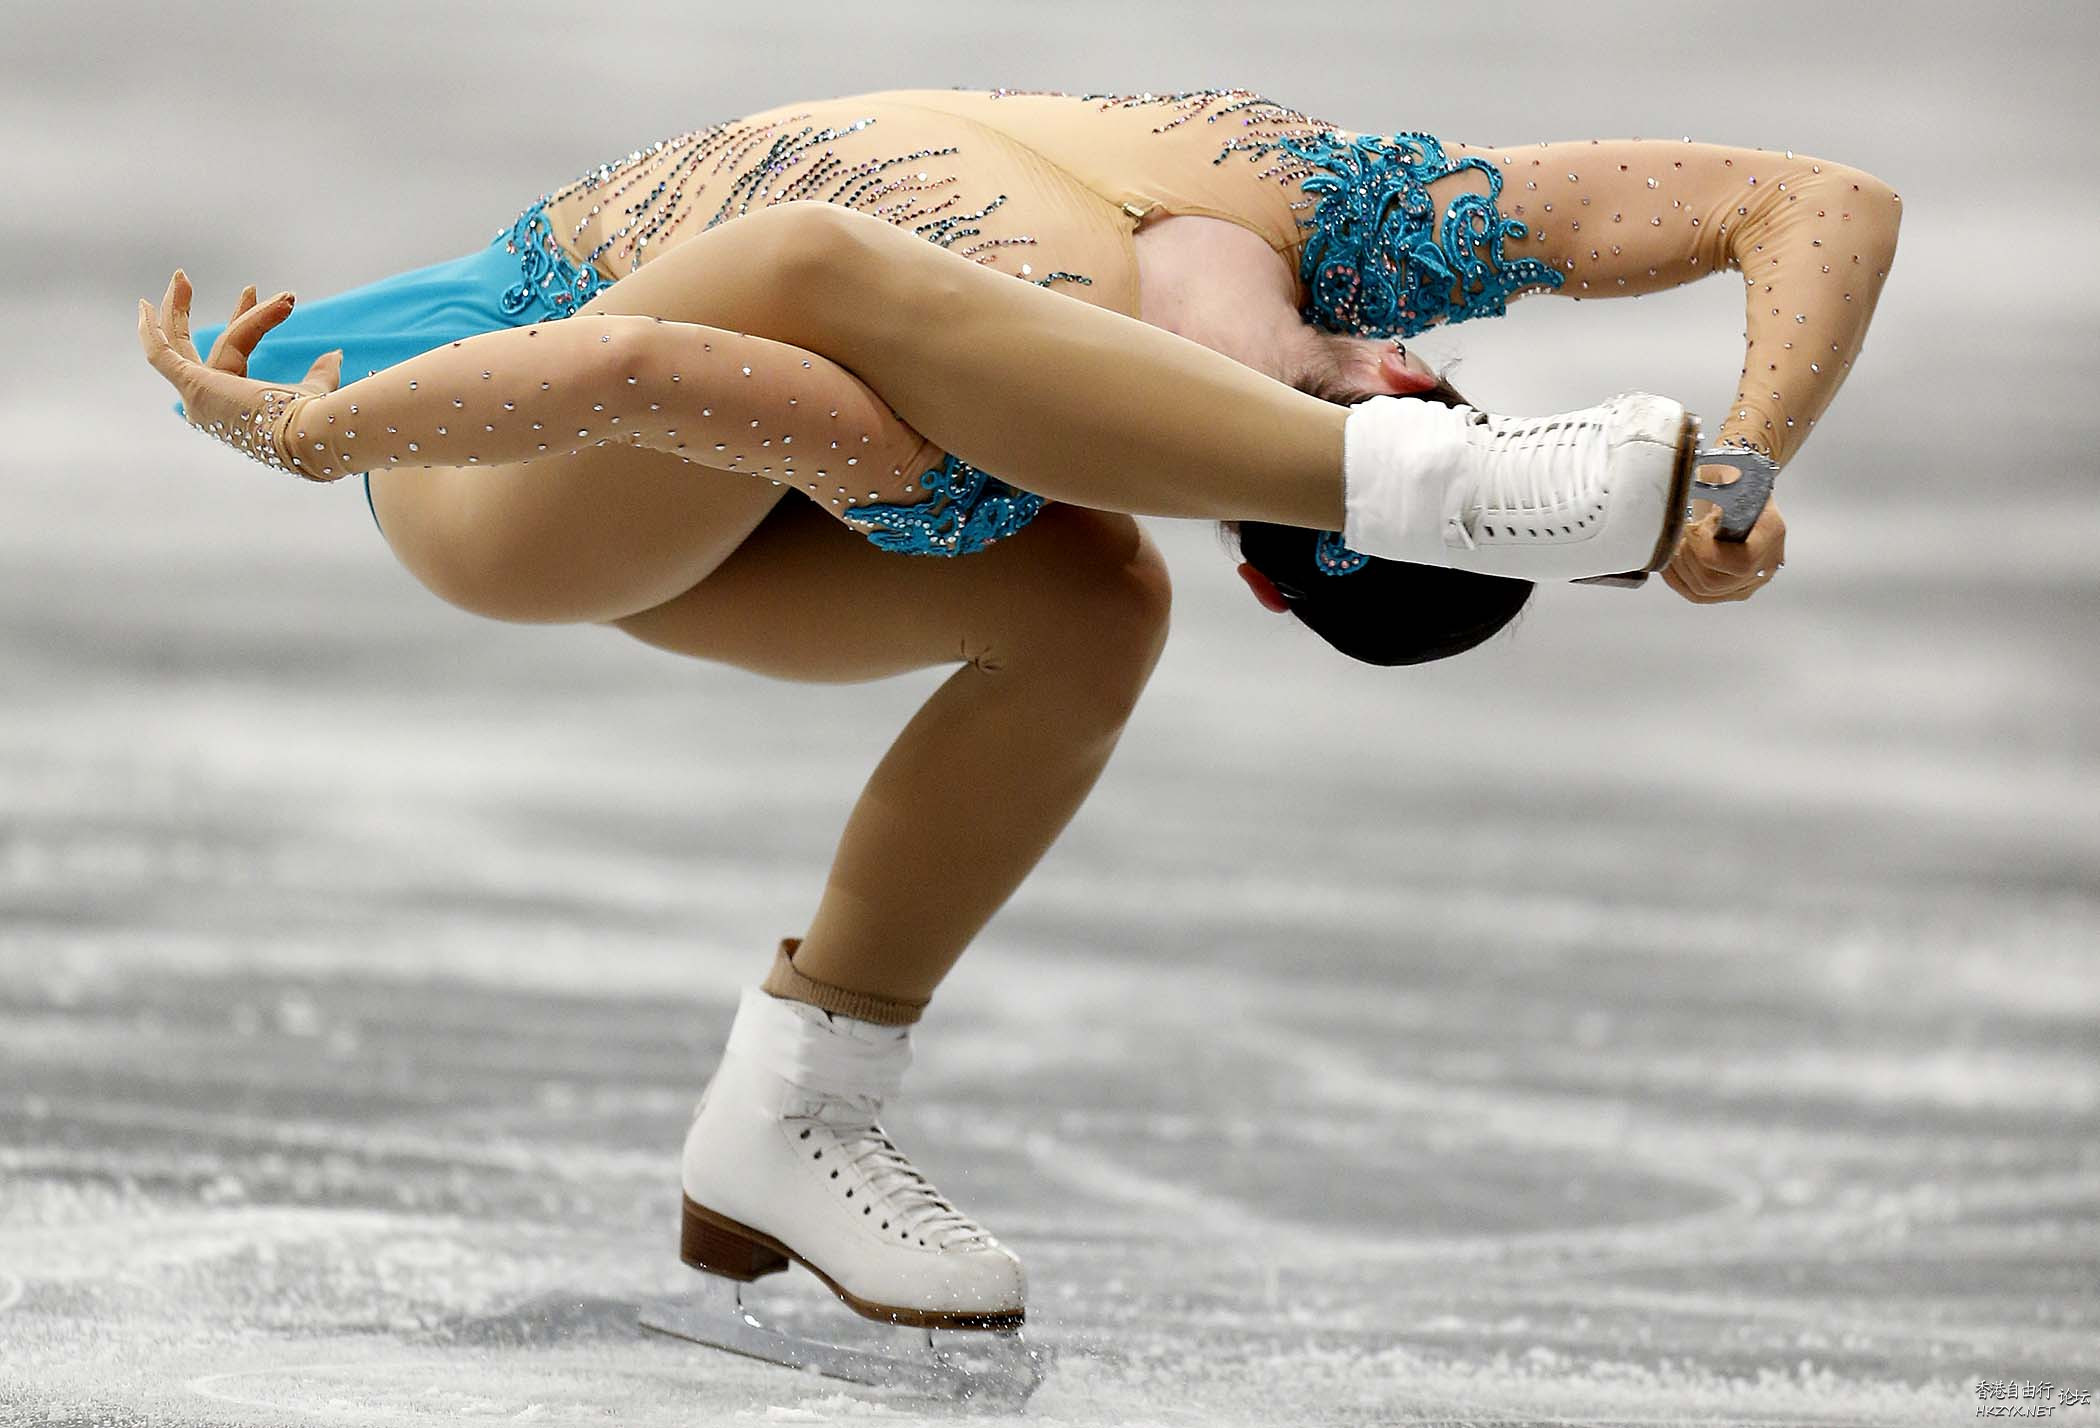 韓國滑冰美女閔秀拉比賽  舞姿百態